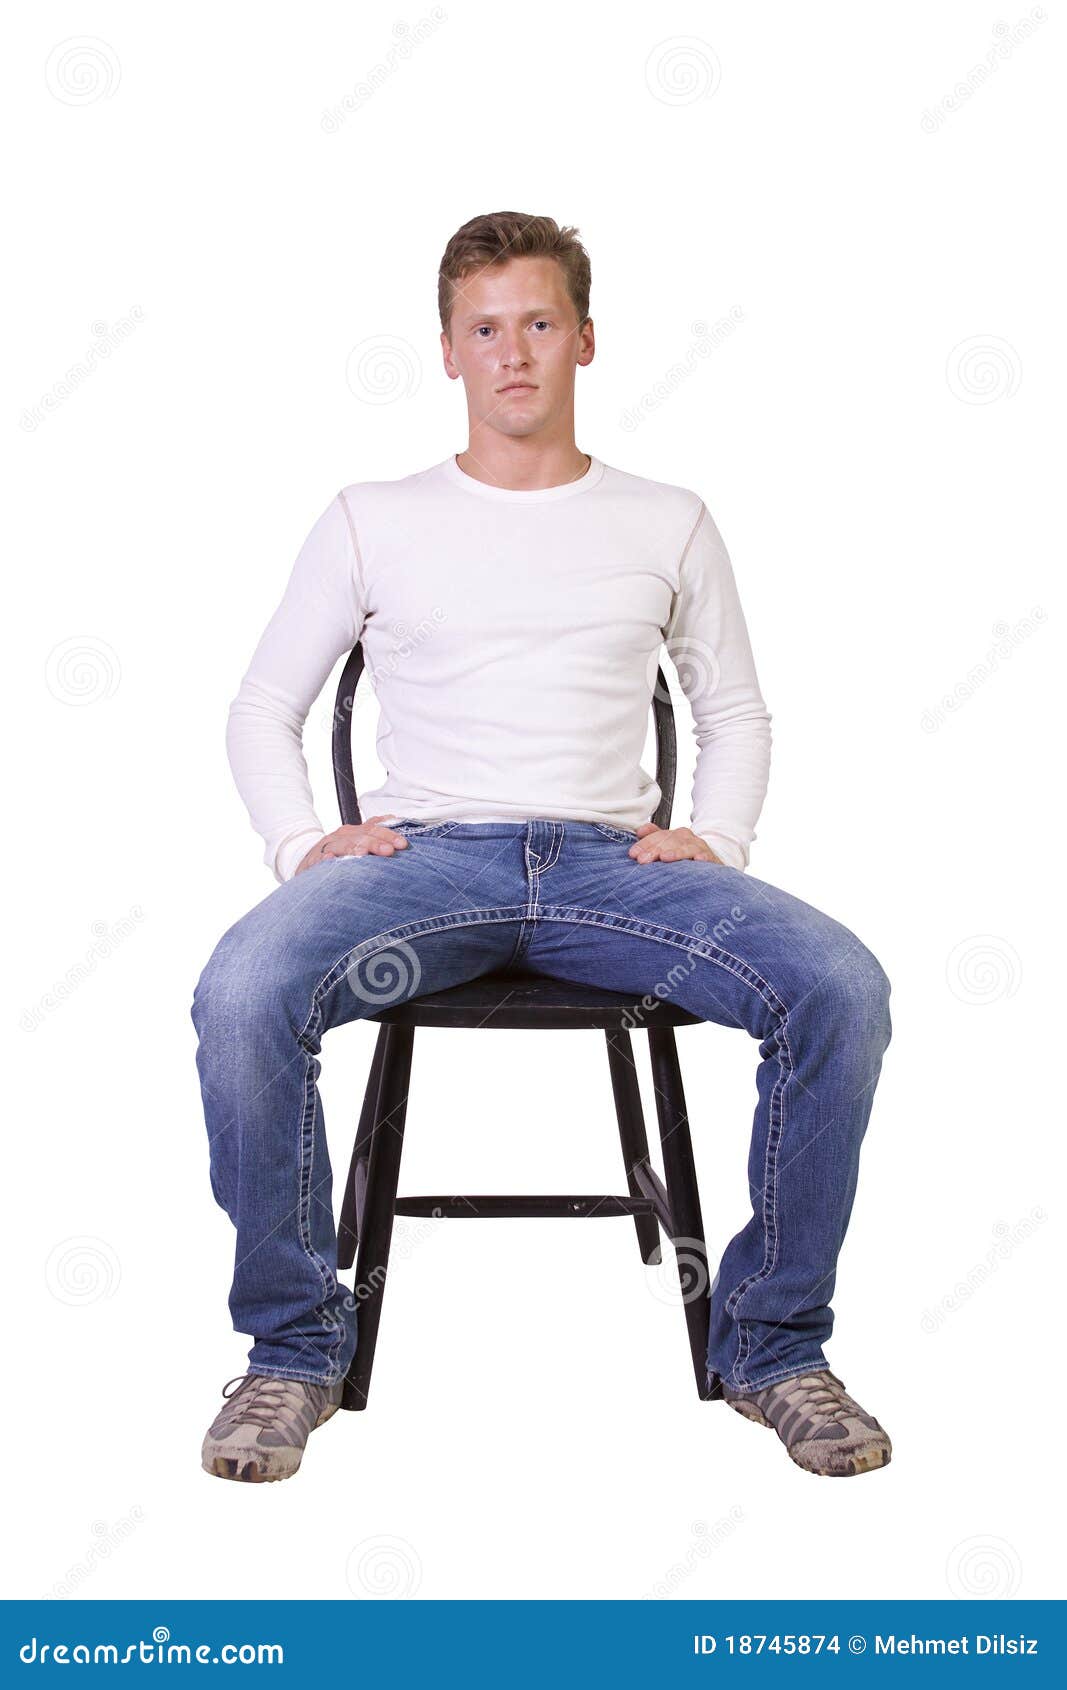 Сидит какое лицо. Человек на стуле. Человек сидит на стуле. Сидячий человек. Человек на стуле прямо.